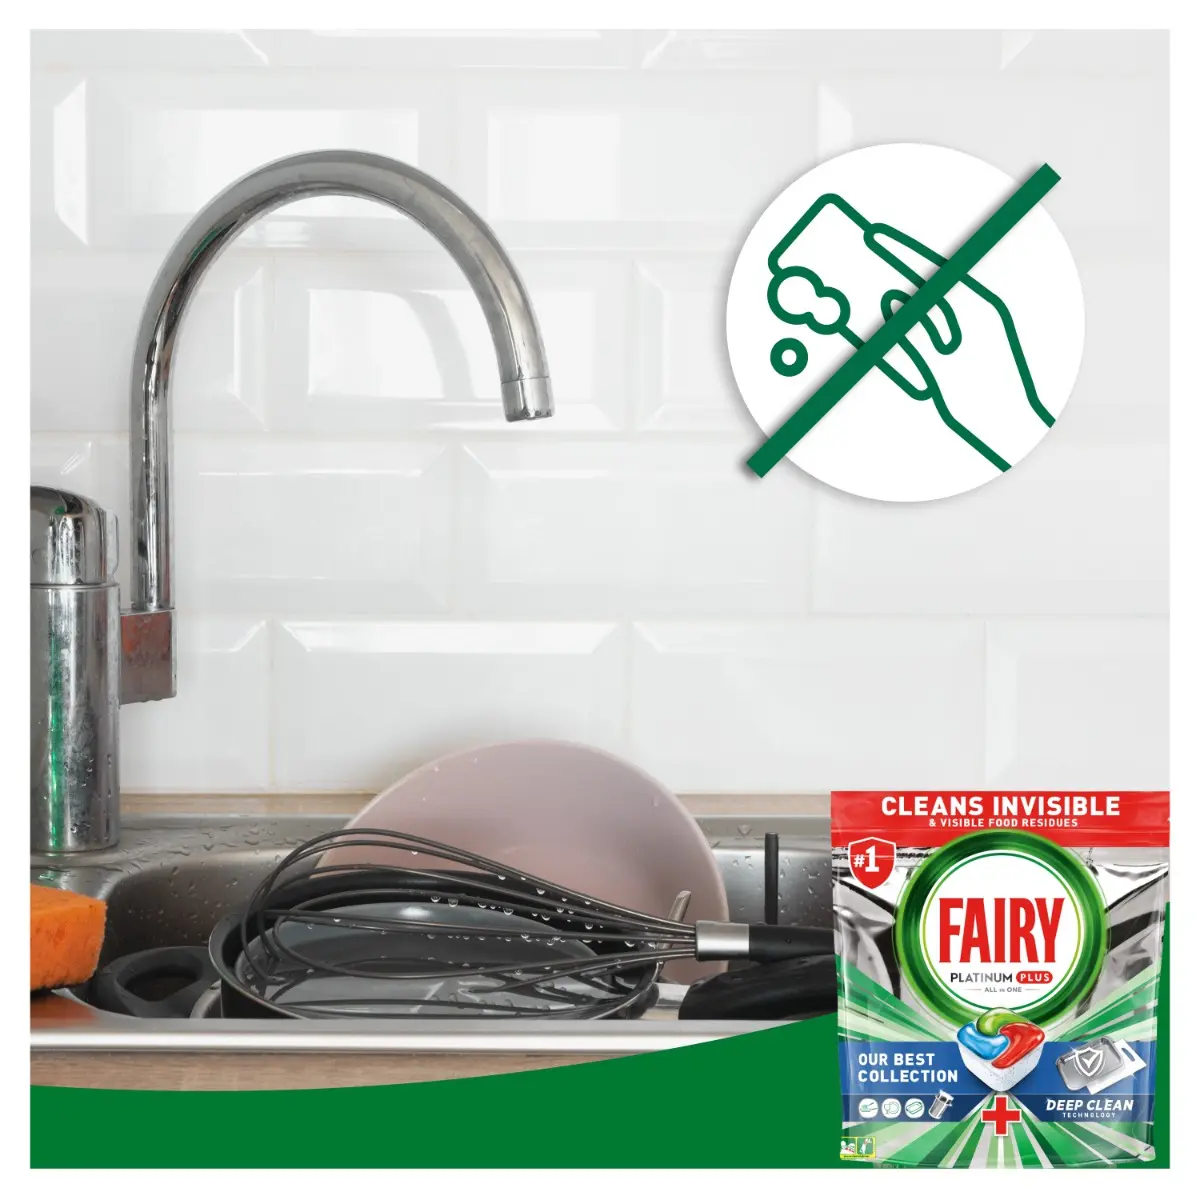 Detergent Fairy Platinum Plus Deep Clean pentru masina de spalat vase, 13 spalari